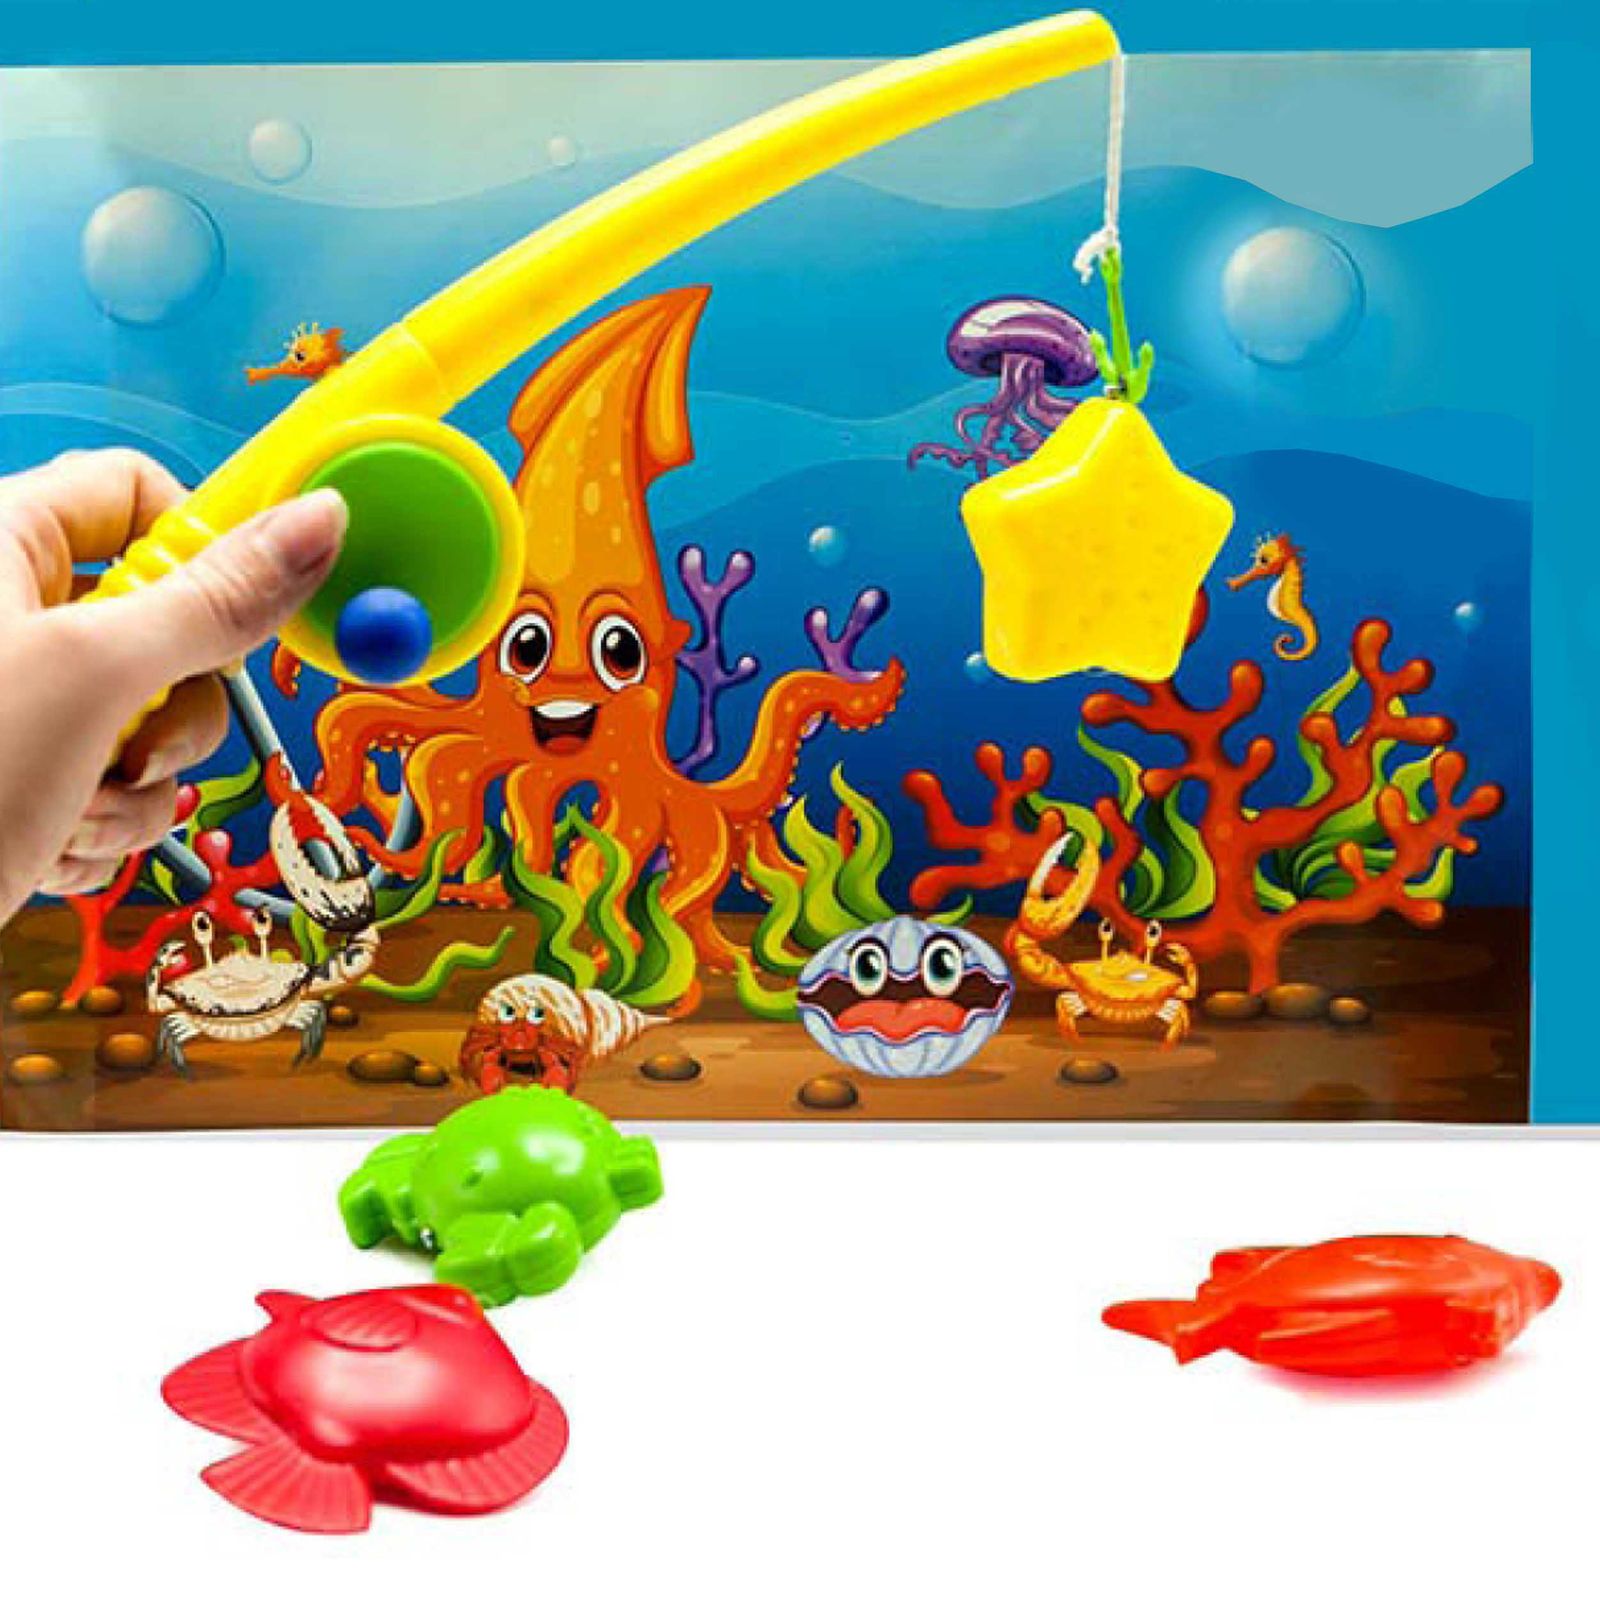 اسباب بازی مدل ماهیگیر مغناطیسی کد 446 -  - 2